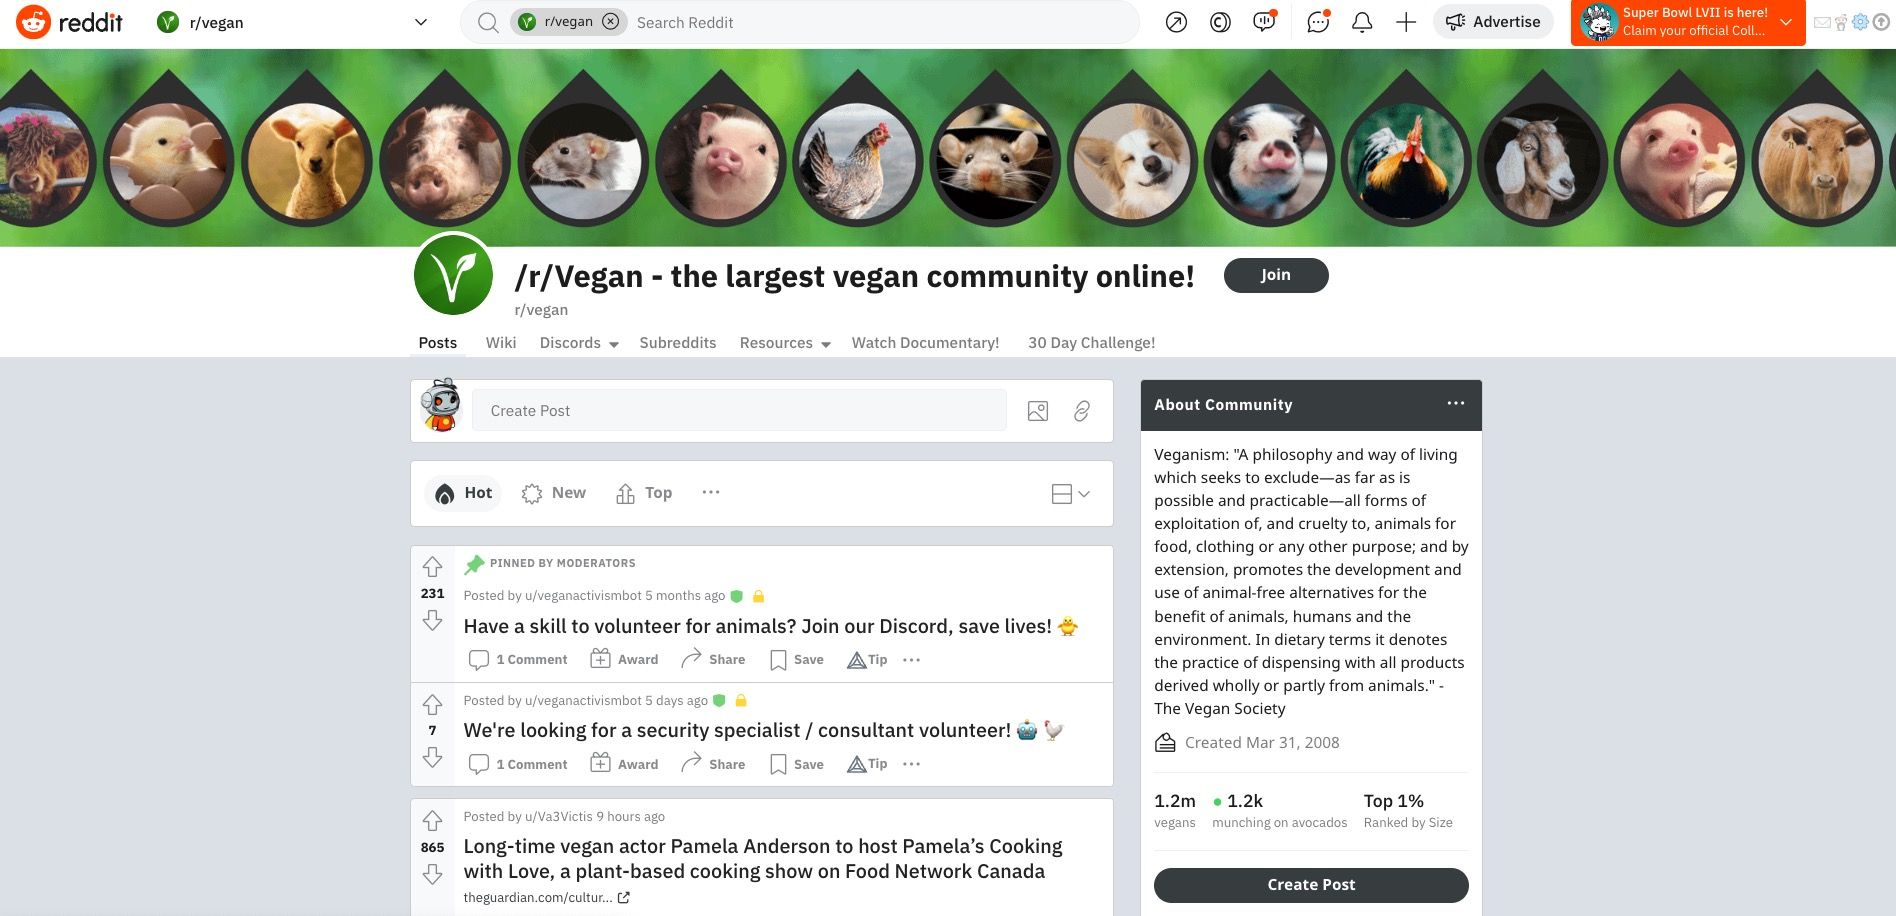 Tangkapan layar subreddit vegan Reddit